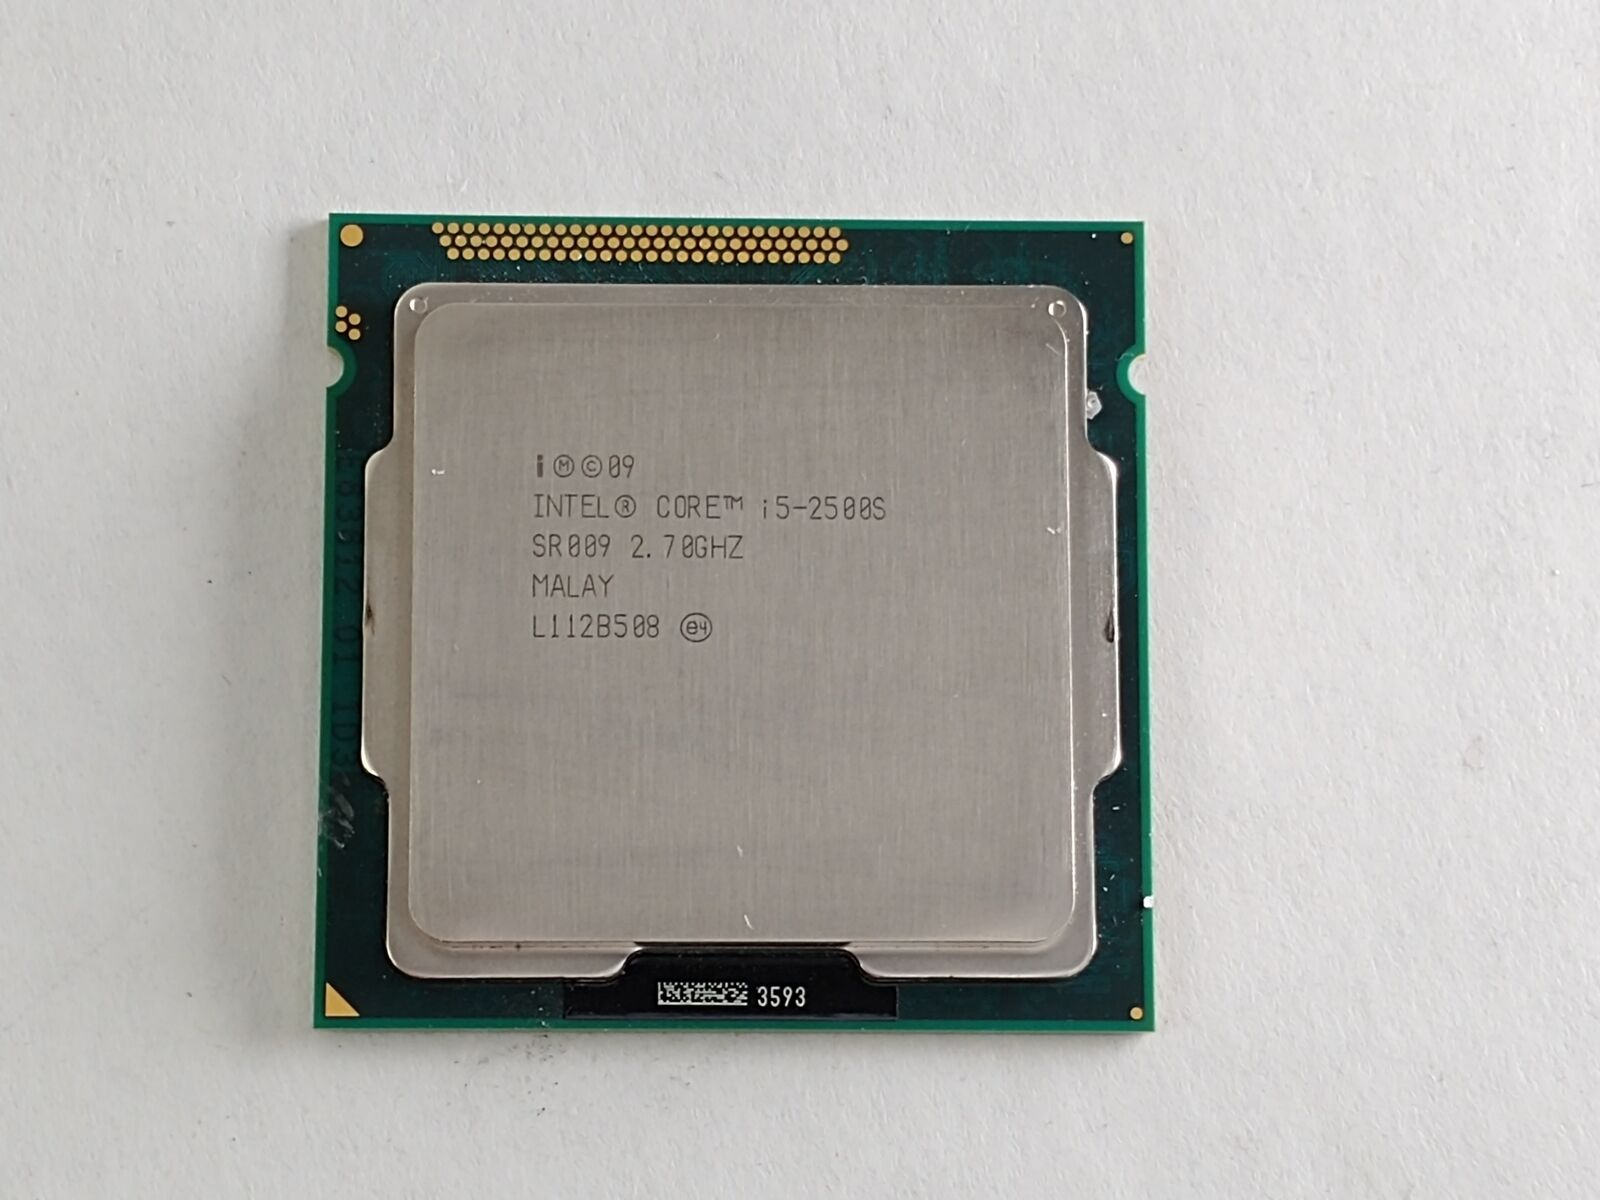 Intel Core i5-2500S 2.7 GHz LGA 1155 Desktop CPU Processor SR009